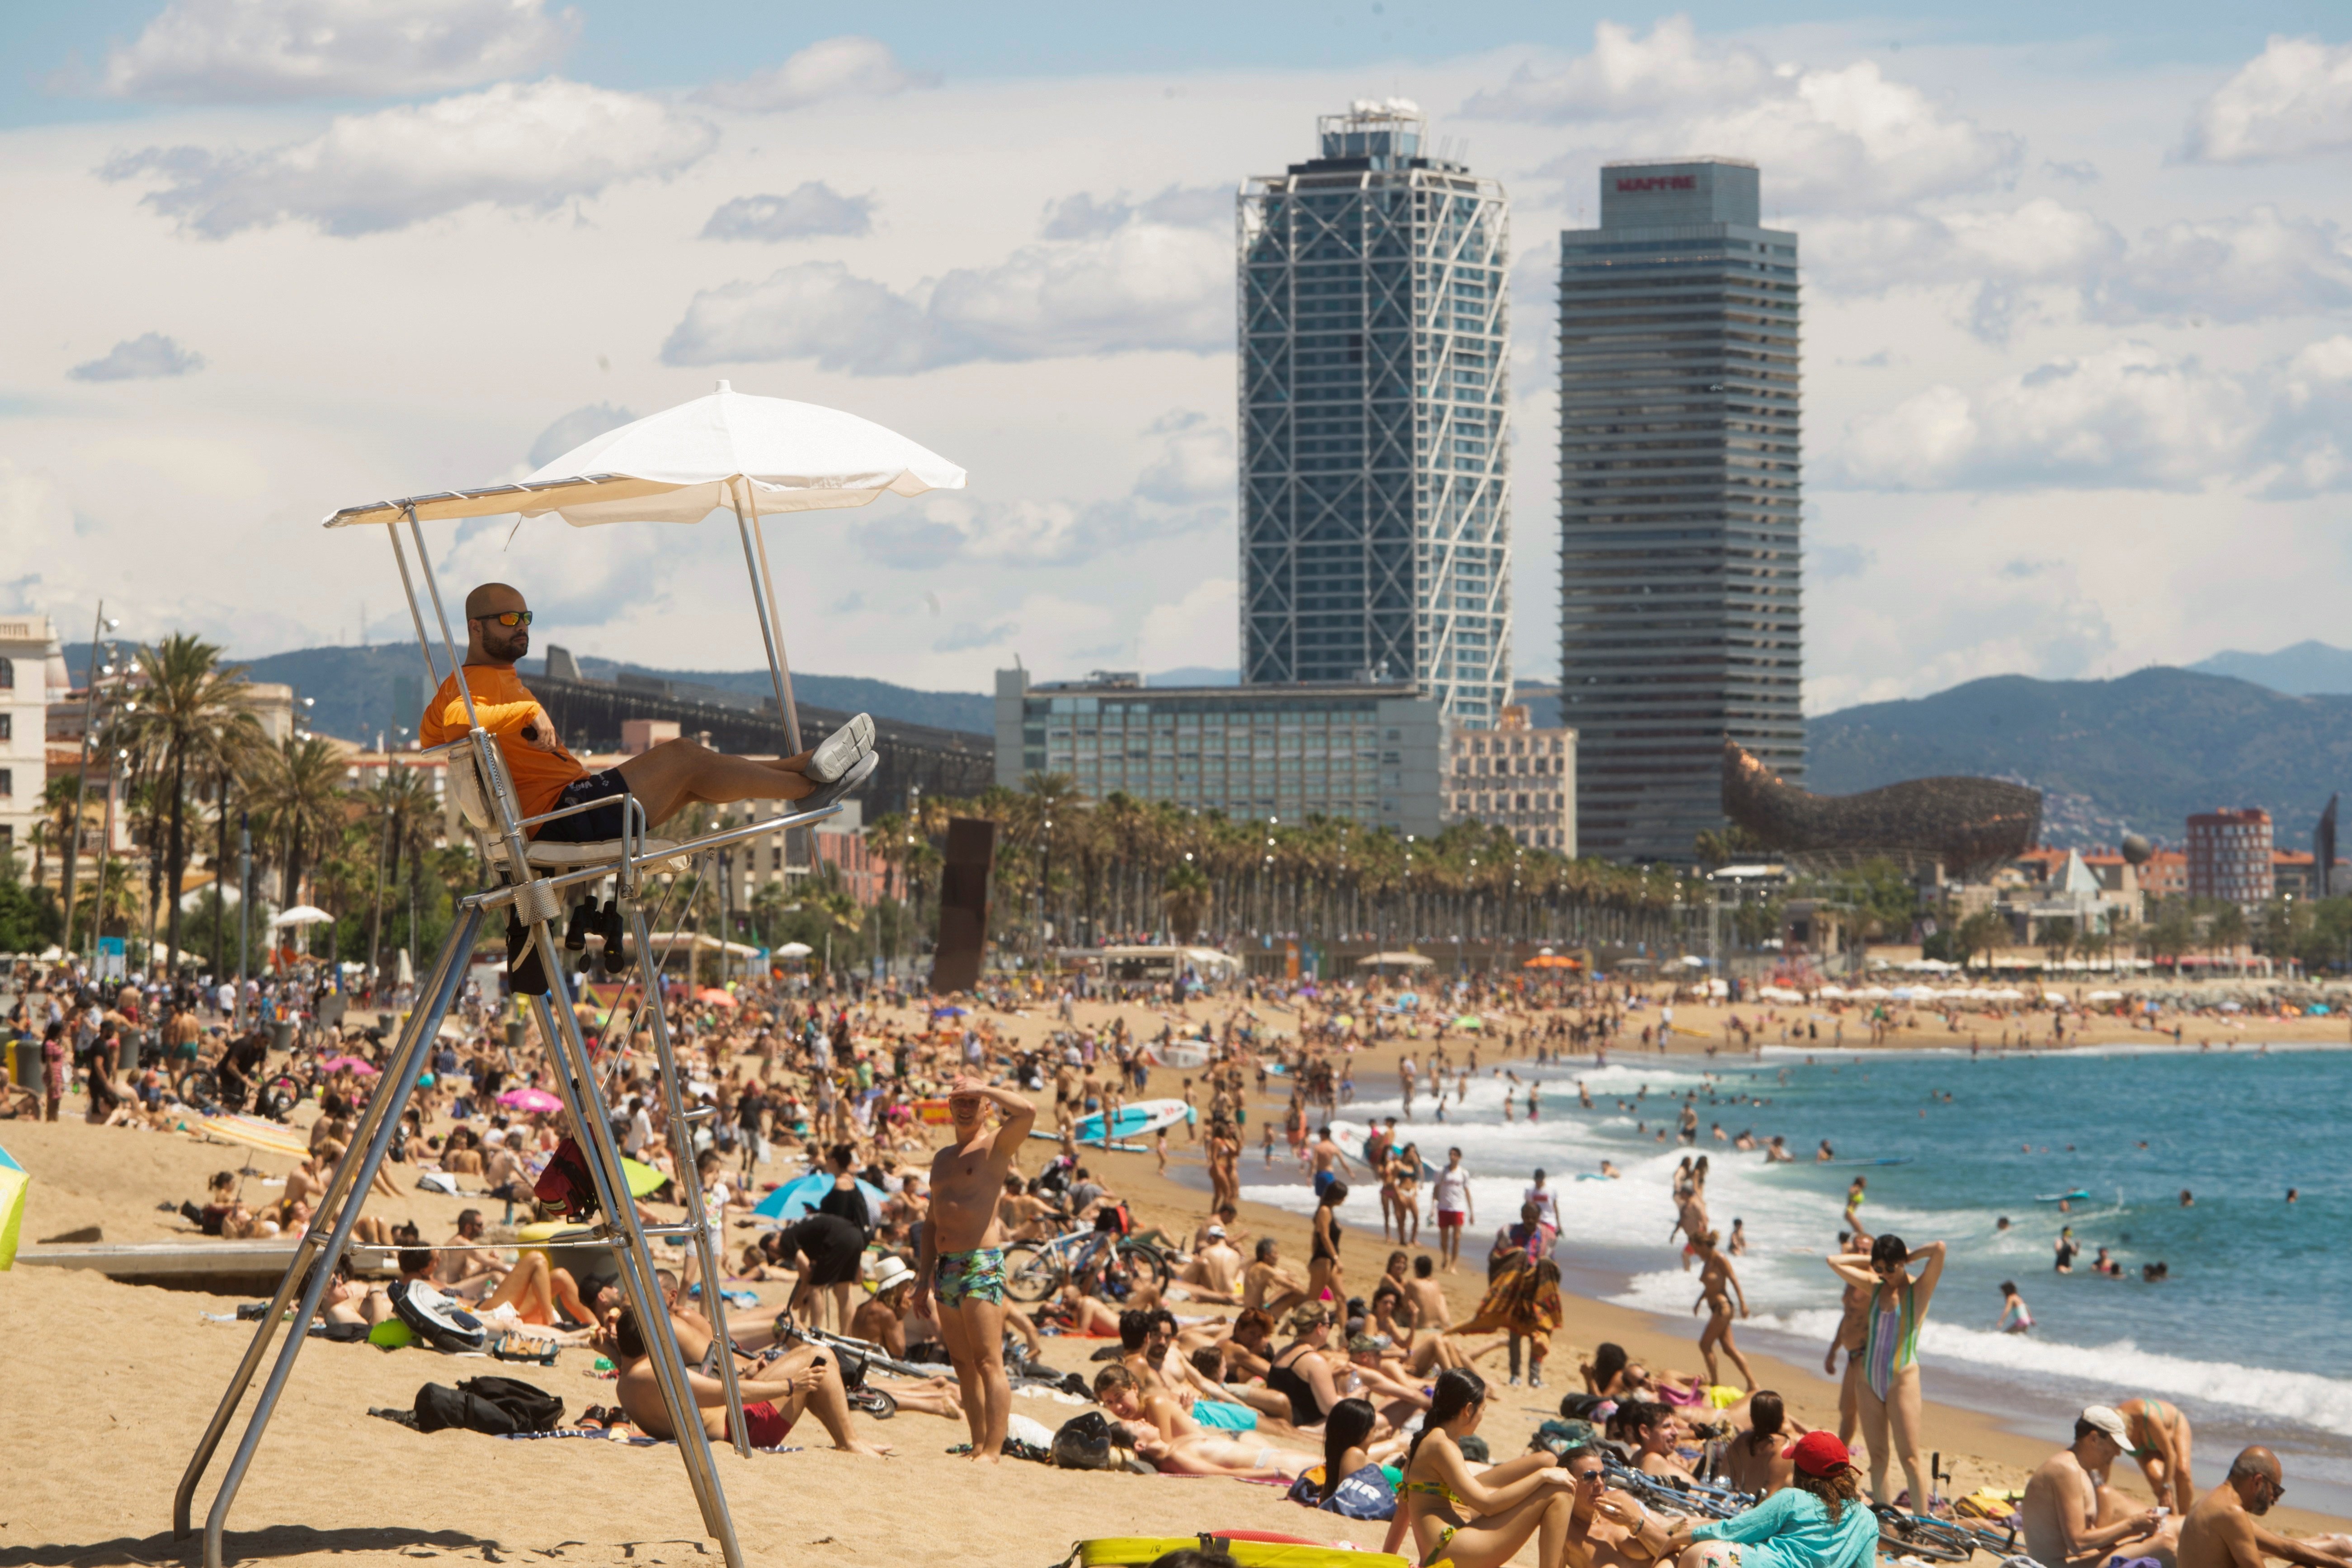 Les aglomeracions de gent obliguen a tancar 4 platges a Barcelona